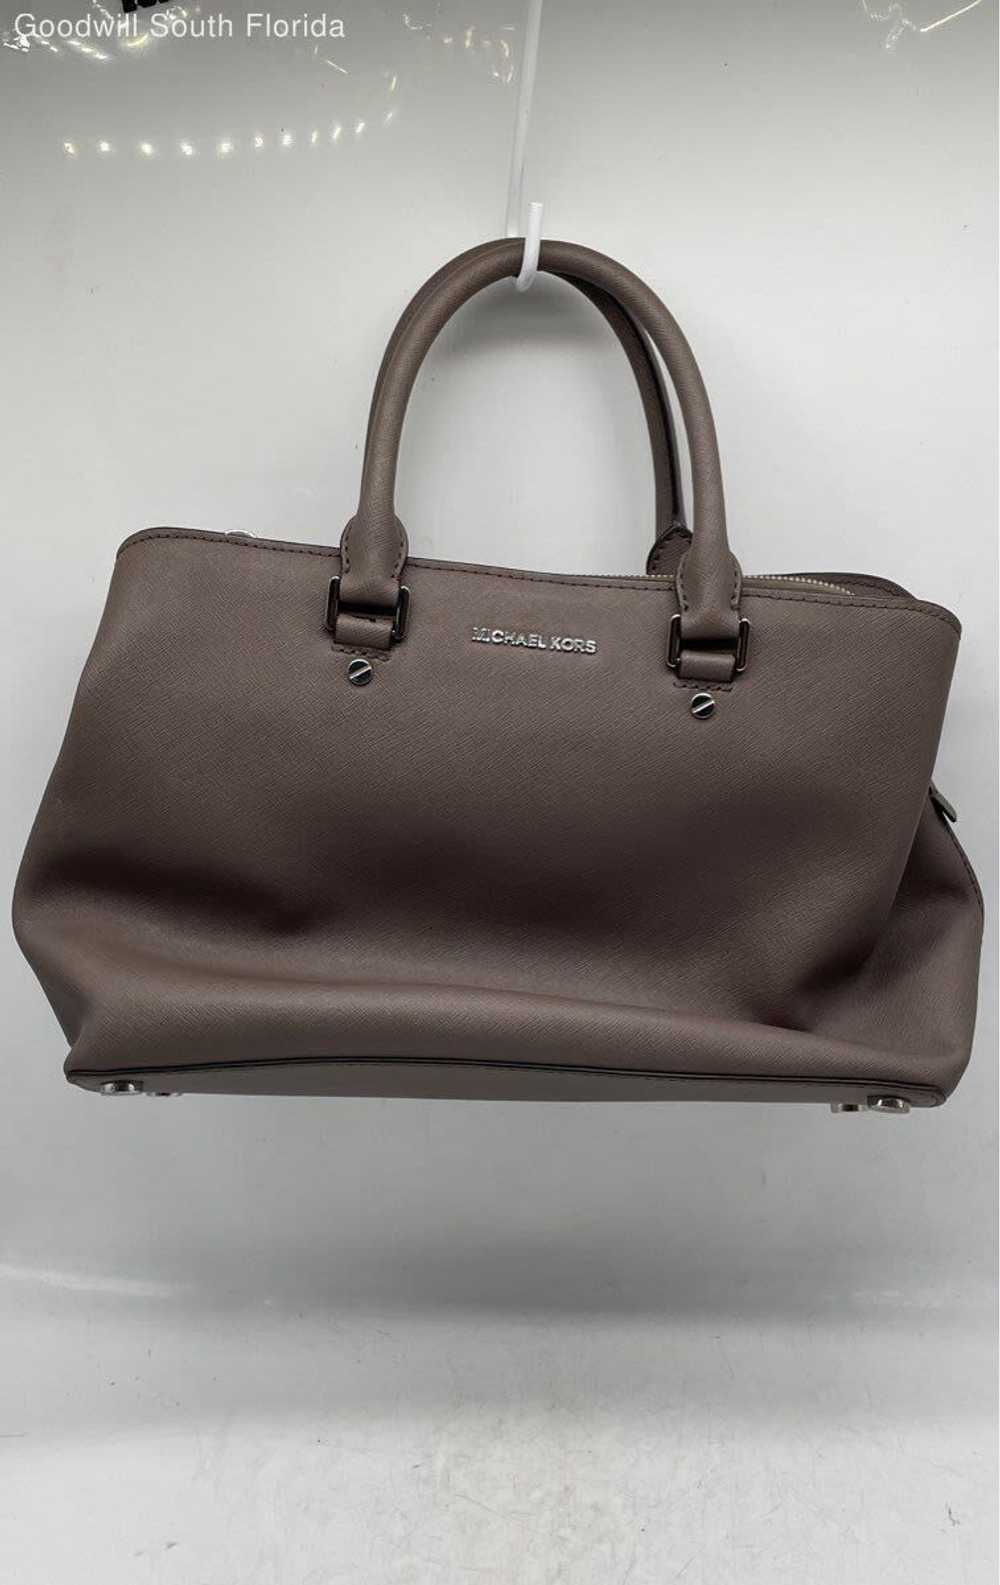 Michael Kors Womens Gray Handbag - image 1